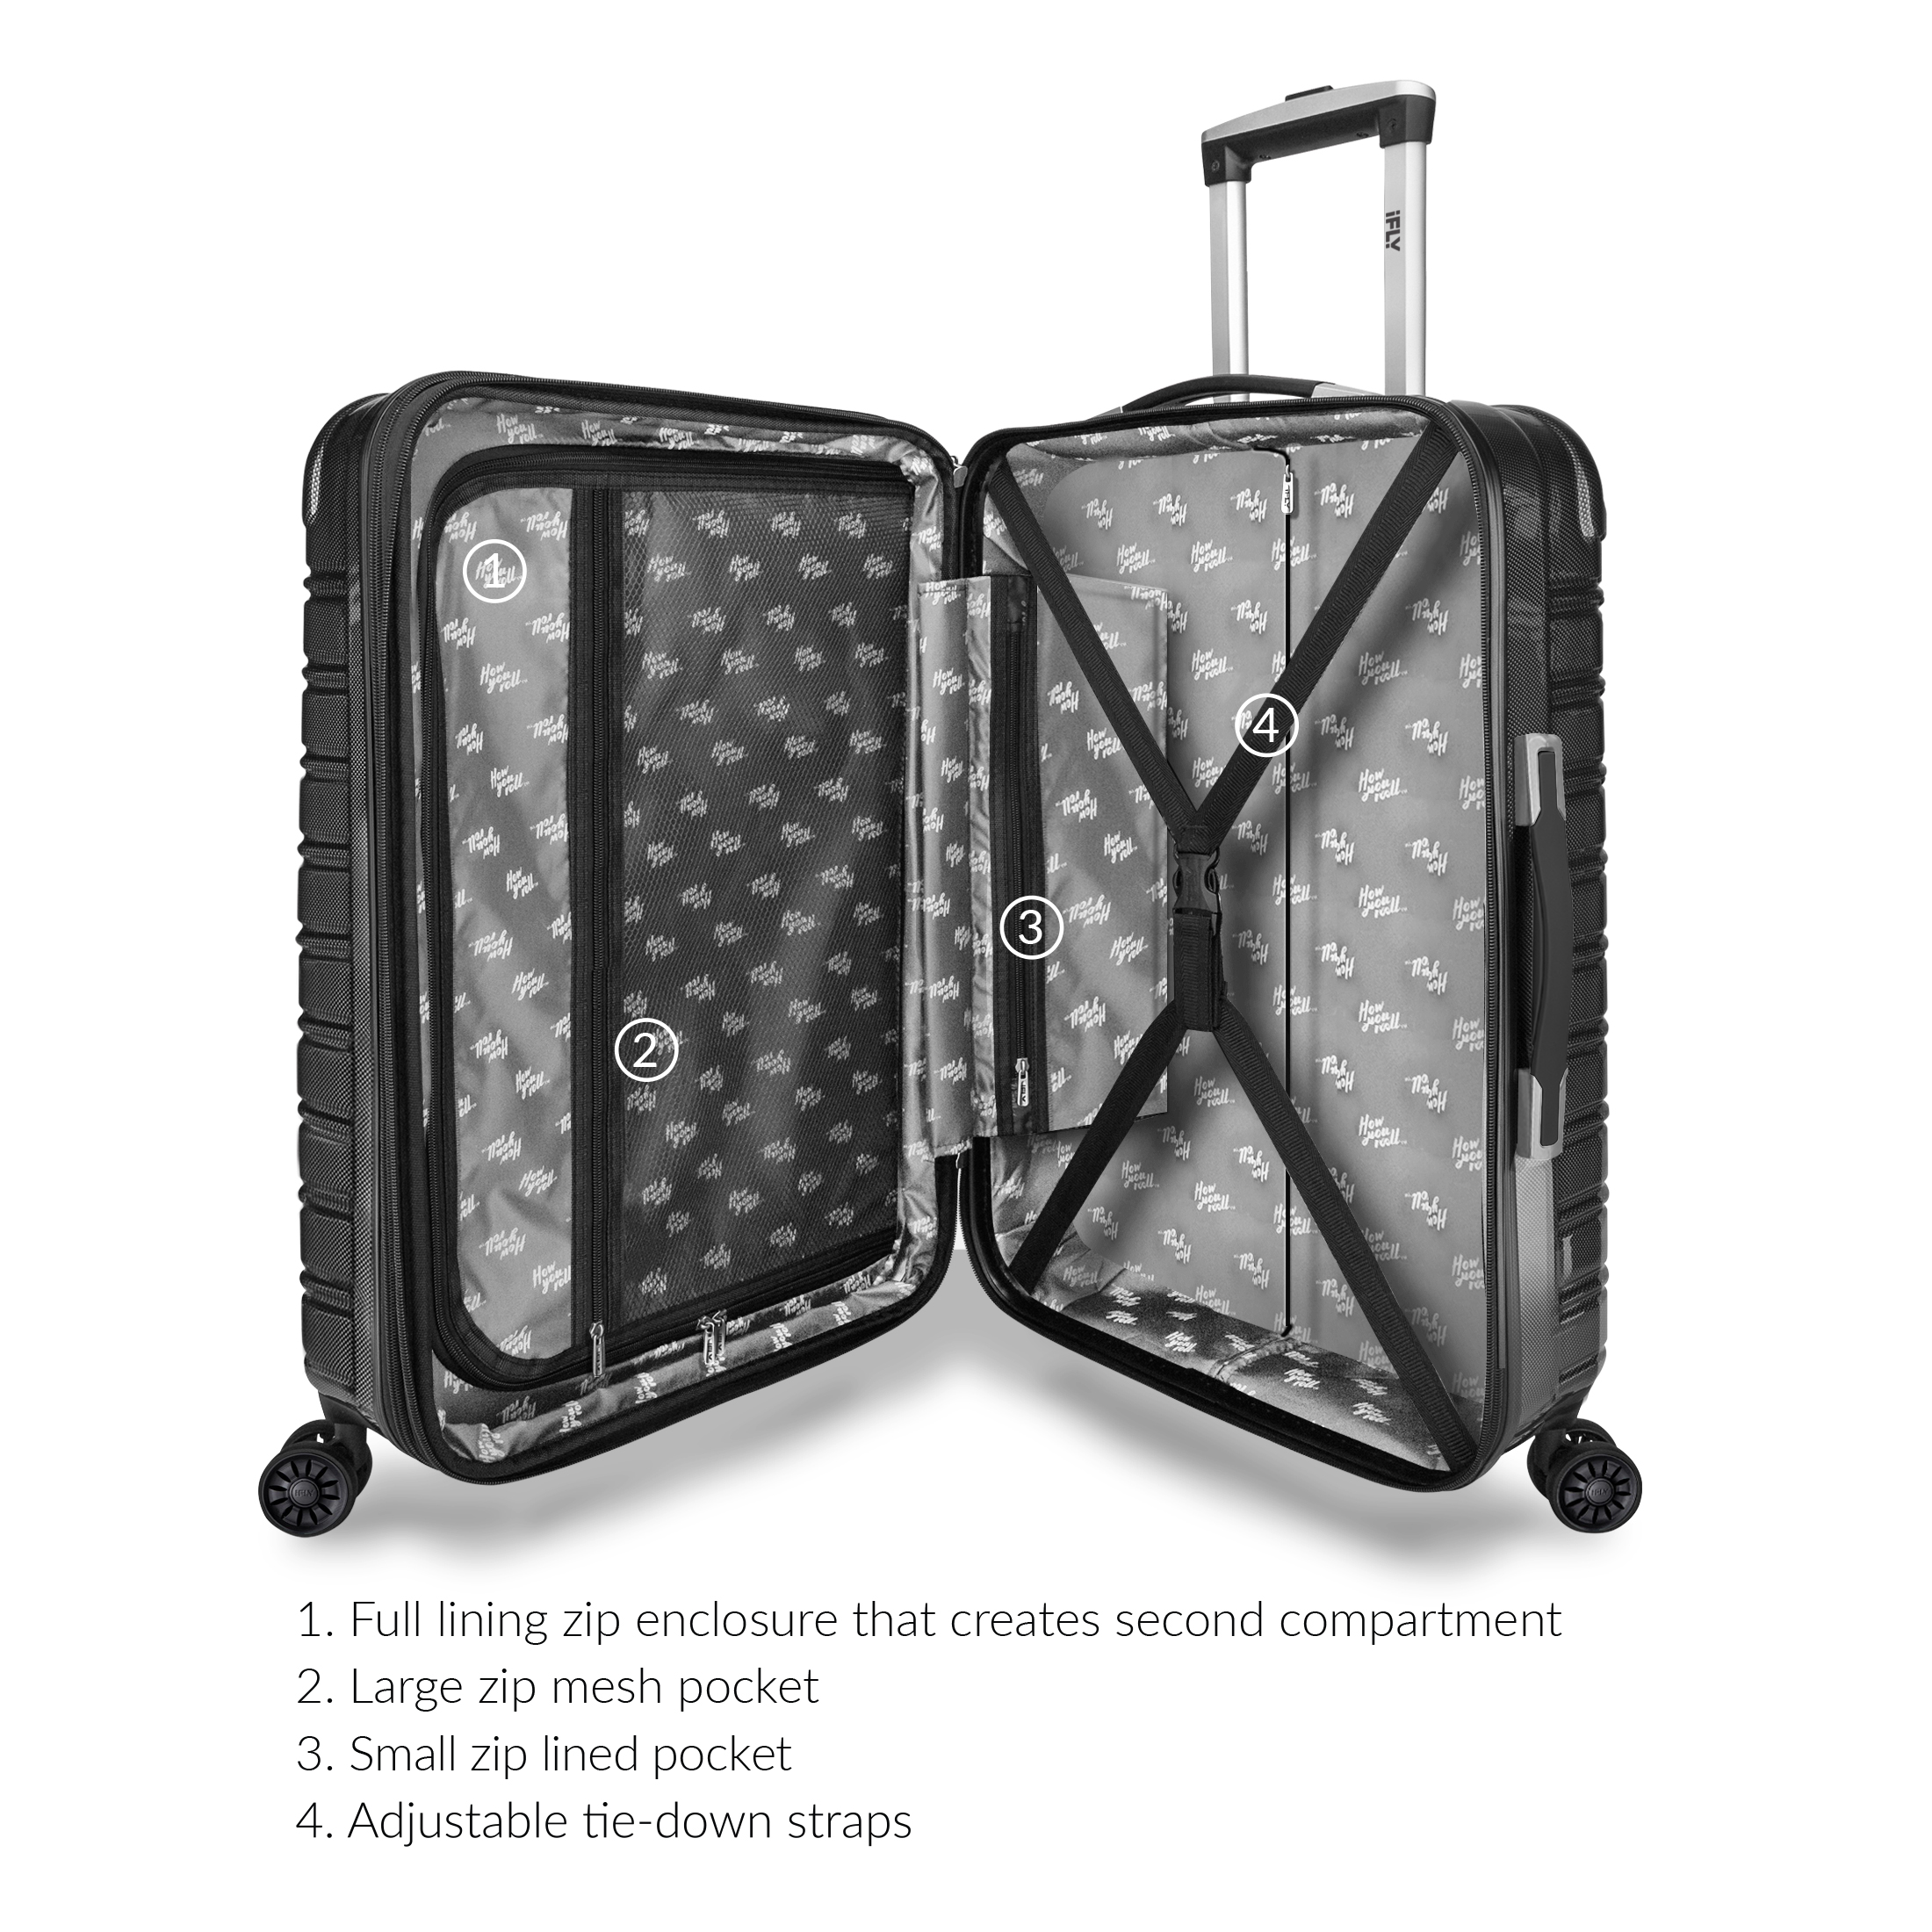 iFLY Hardside Fibertech Luggage 20" Carry-on Luggage, Black - image 3 of 10